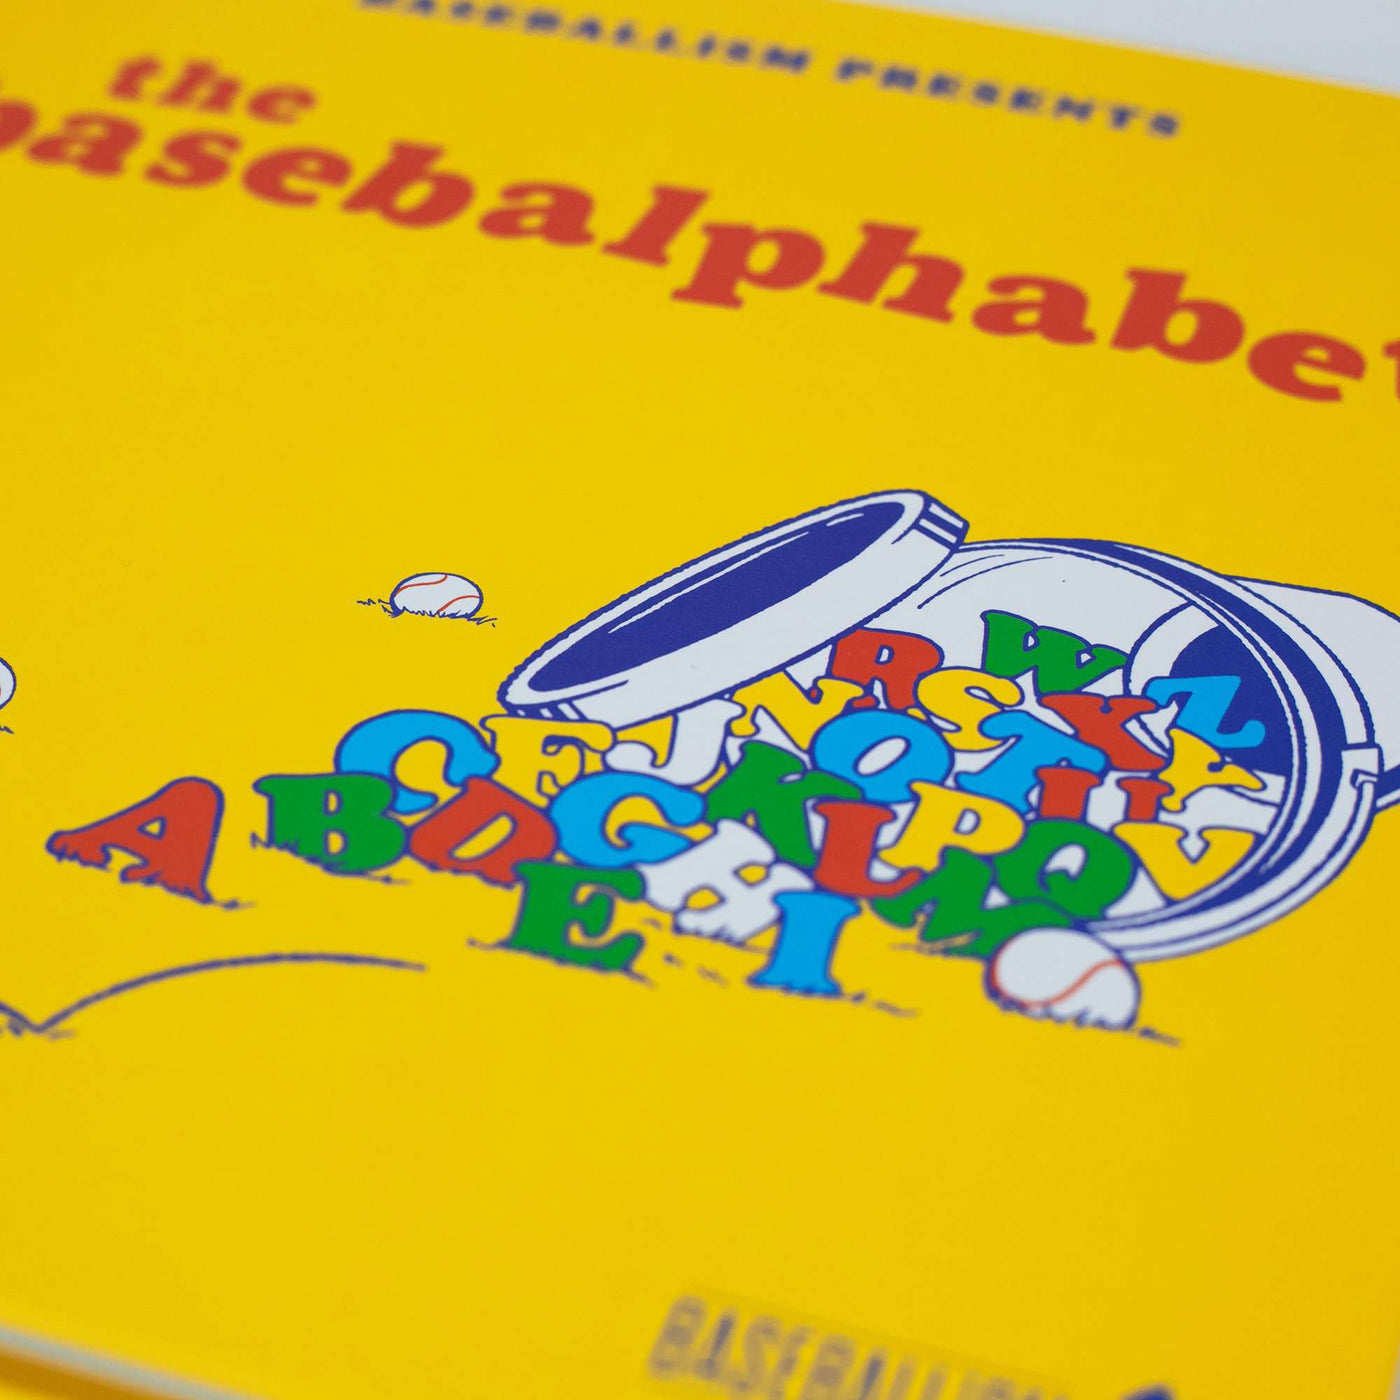 El Alfabeto Base - Libro para niños